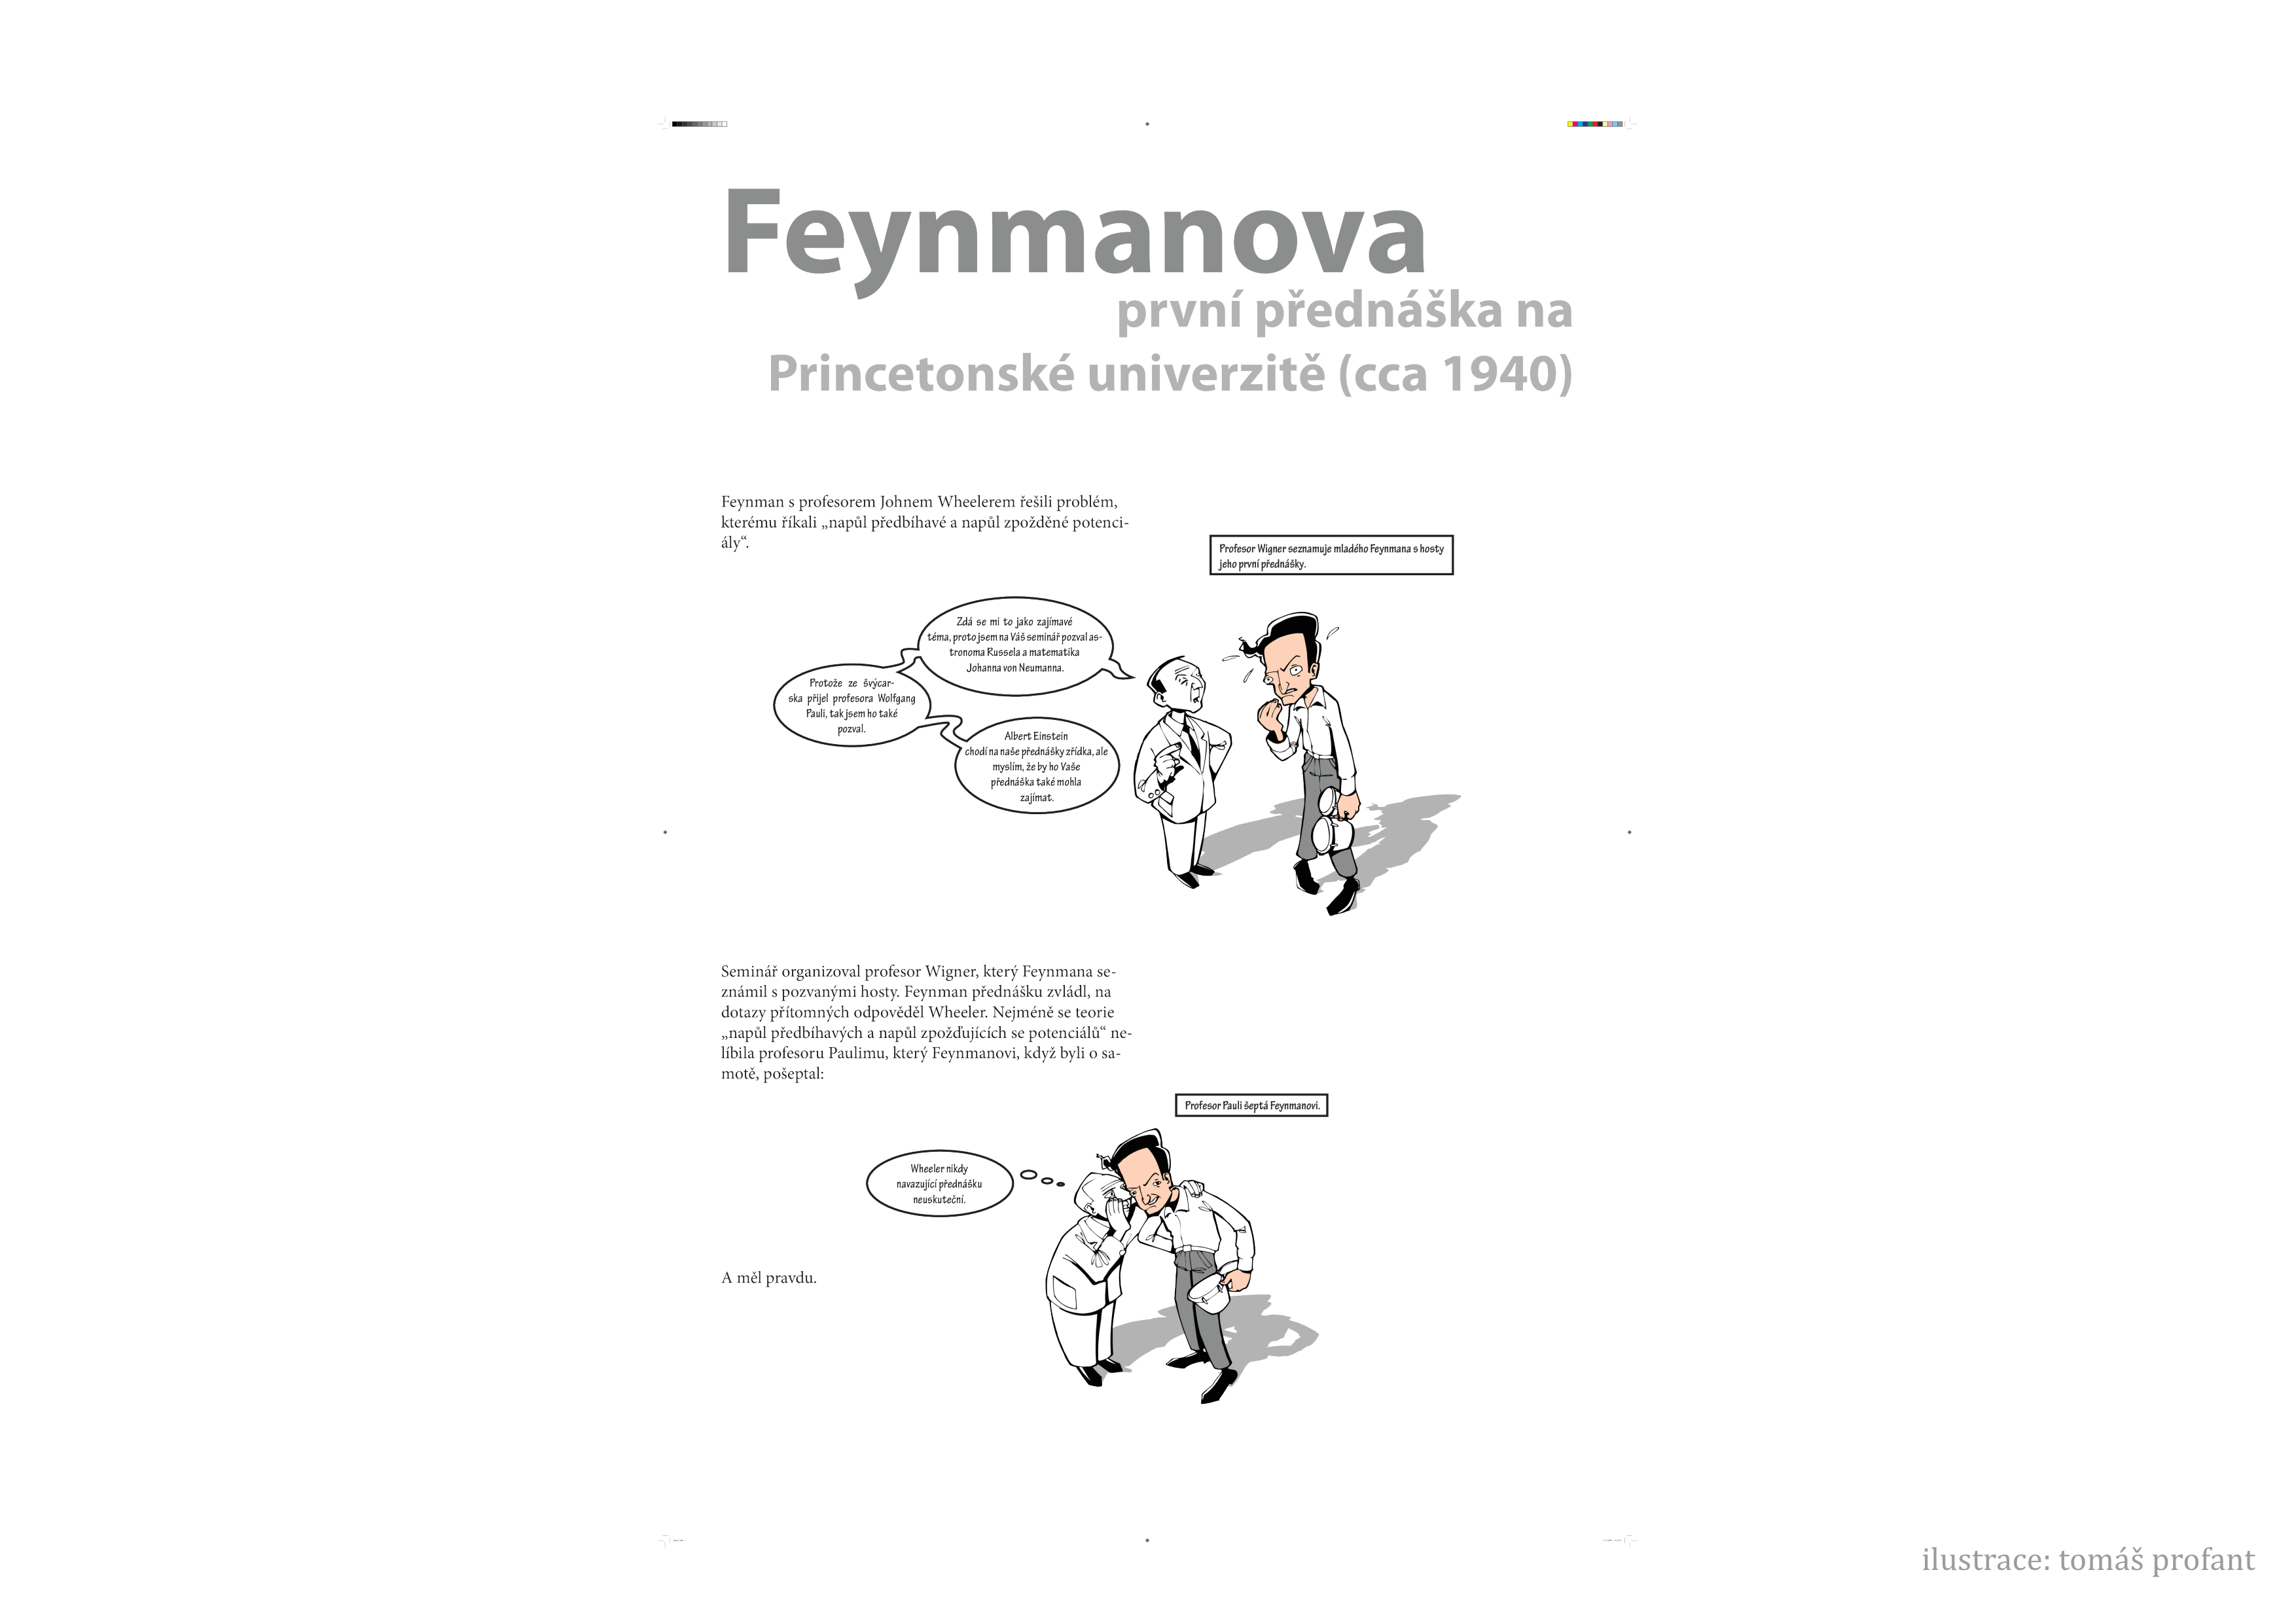 _images/feynman-str%C3%A1nka003.png